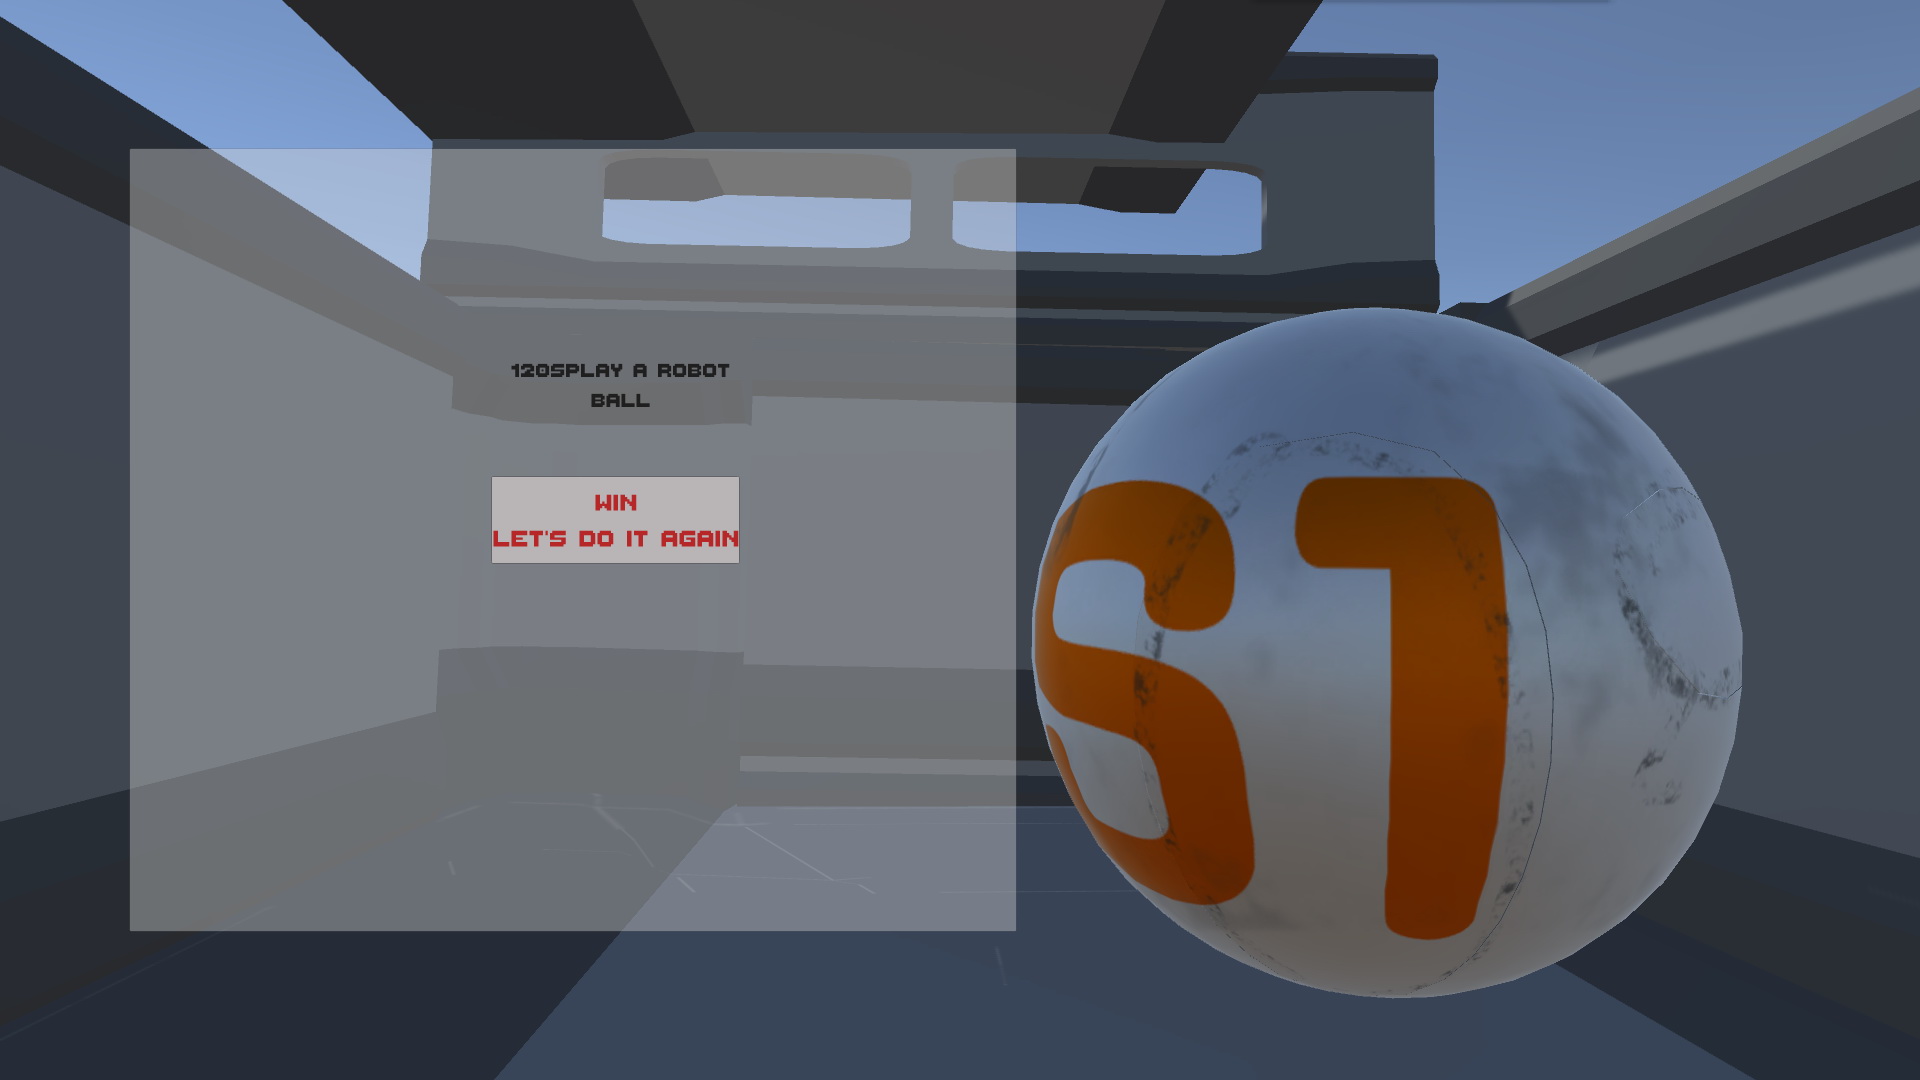 虚拟现实与游戏竞赛作品——120sPlay a robot ball